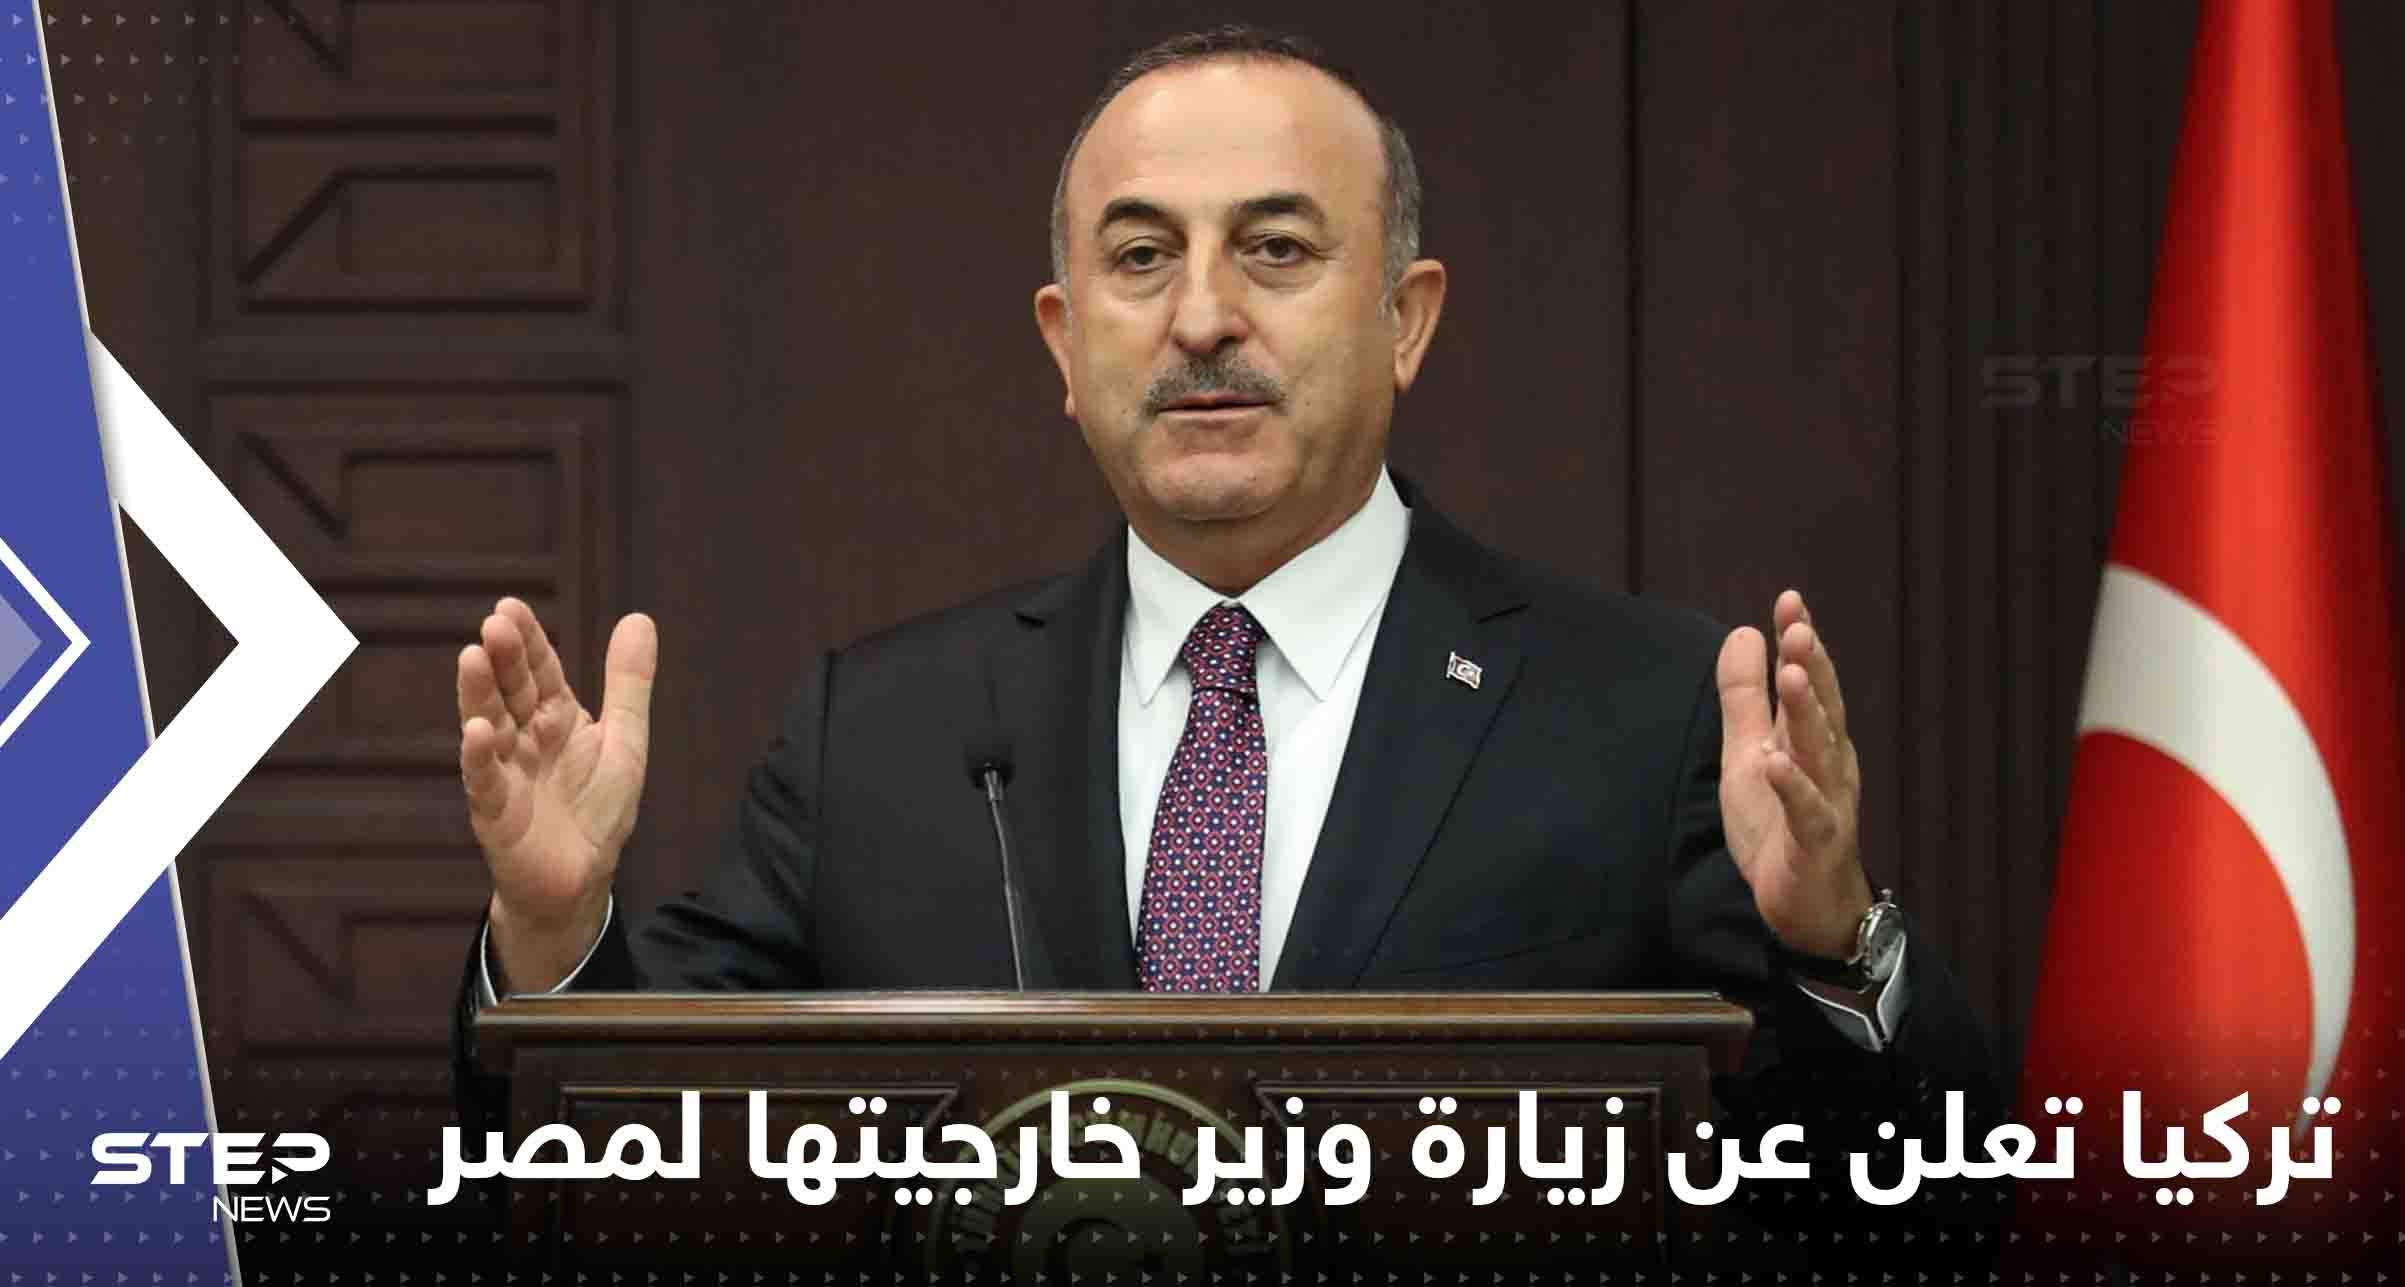 تركيا تعلن عن زيارة وزير خارجيتها لمصر